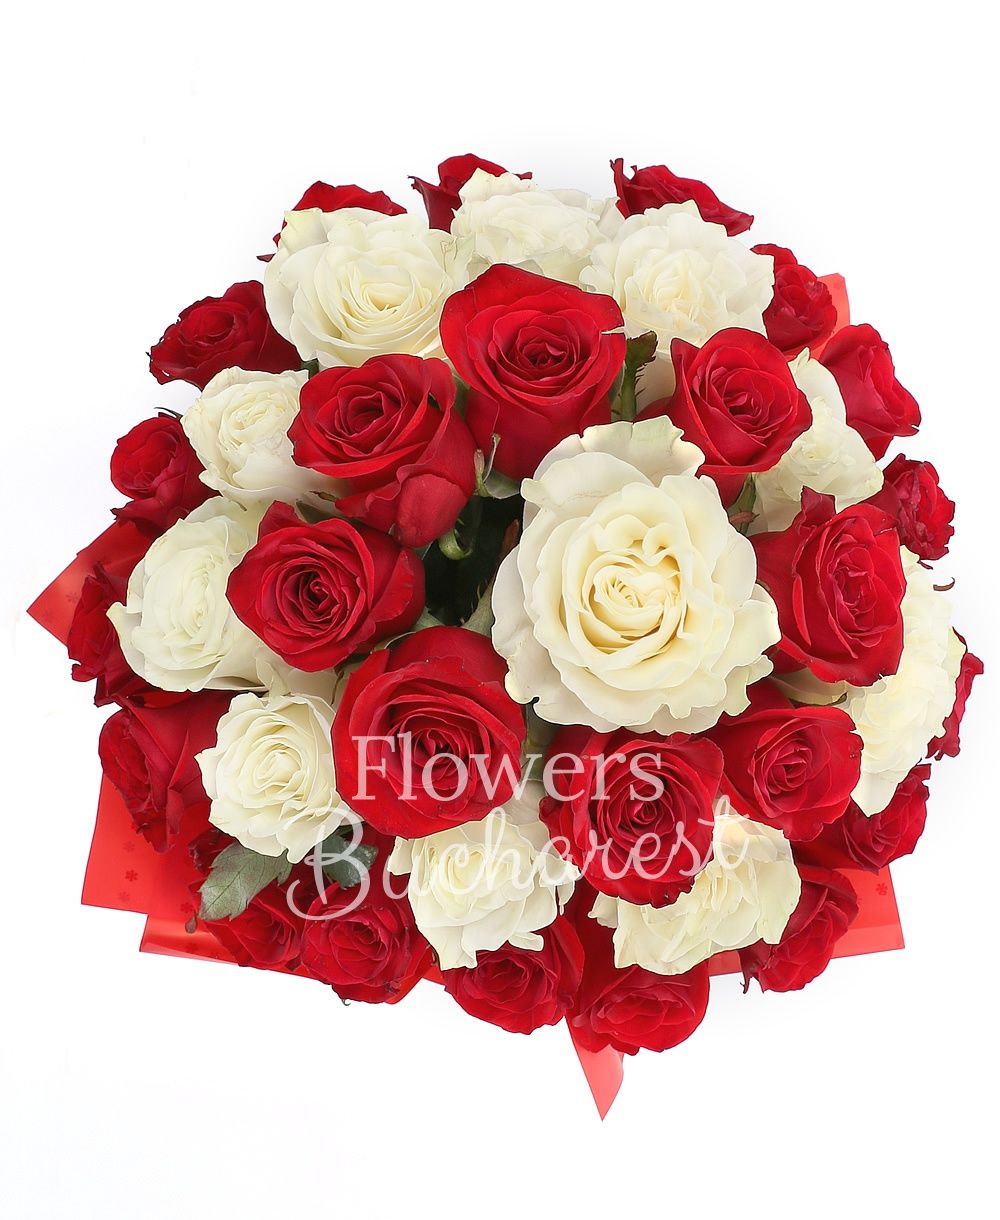 10 white roses, 25 red roses